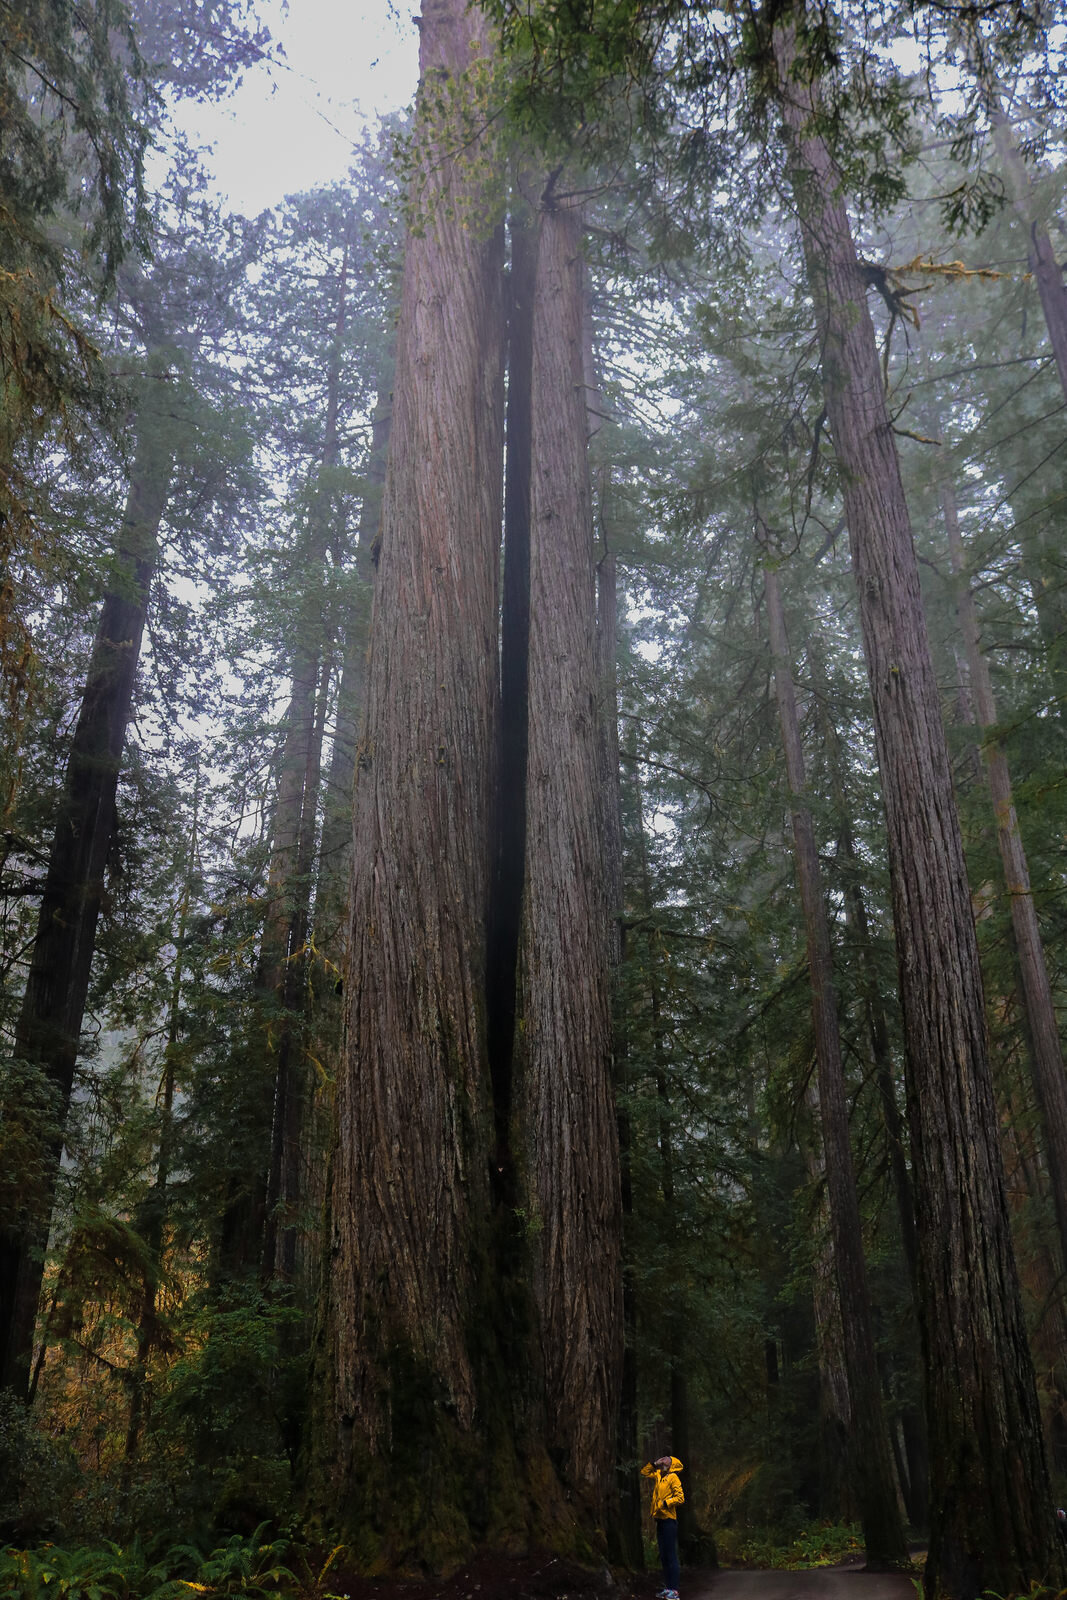 California redwoods towering over girl in yellow coat